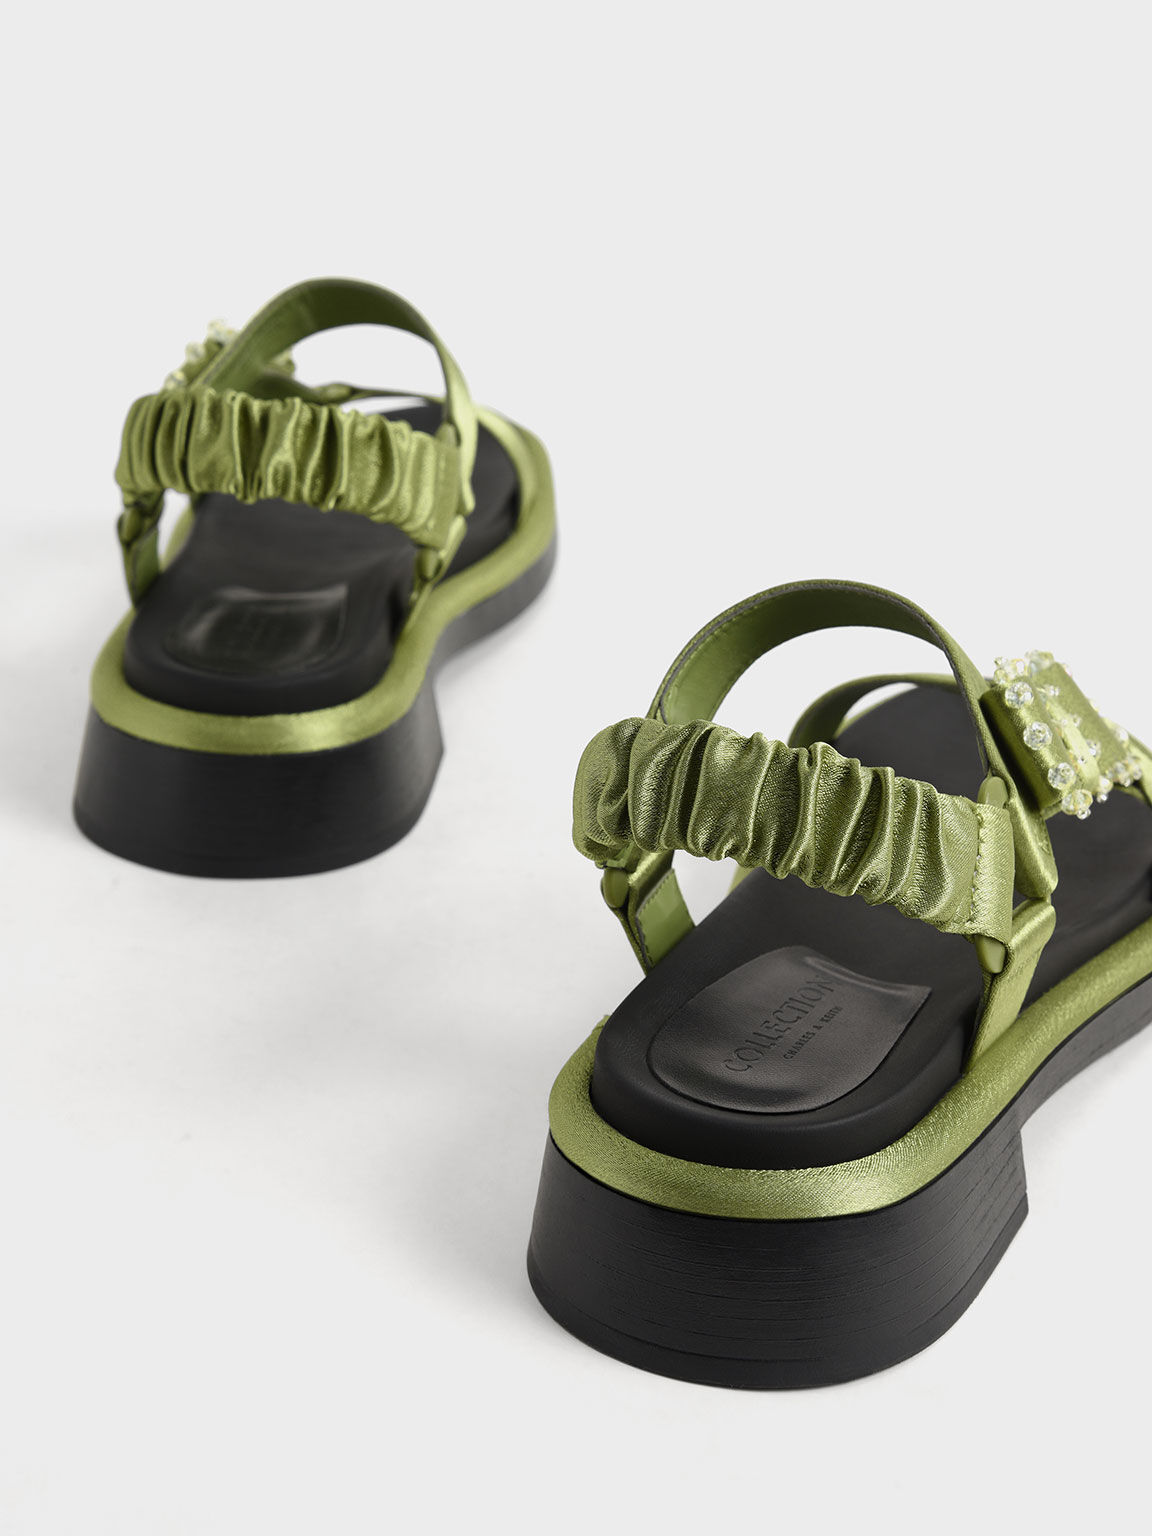 Sandal Miko Gem-Embellished Satin, Green, hi-res